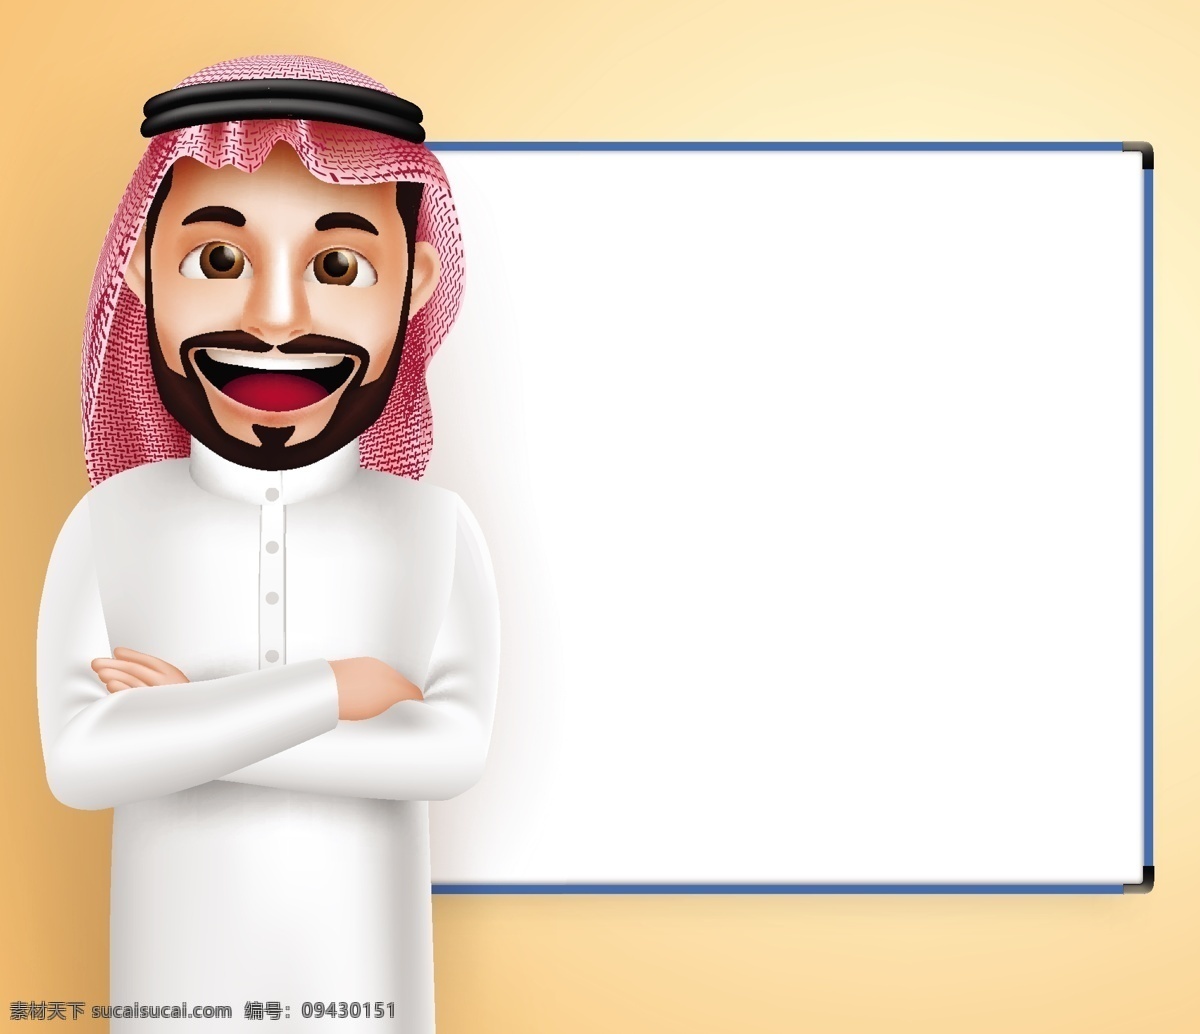 白板 阿拉伯 男人 插画 阿拉伯男人 卡通男人 男性插画 卡通插画 可爱卡通 卡通插图 日常生活 矢量人物 矢量素材